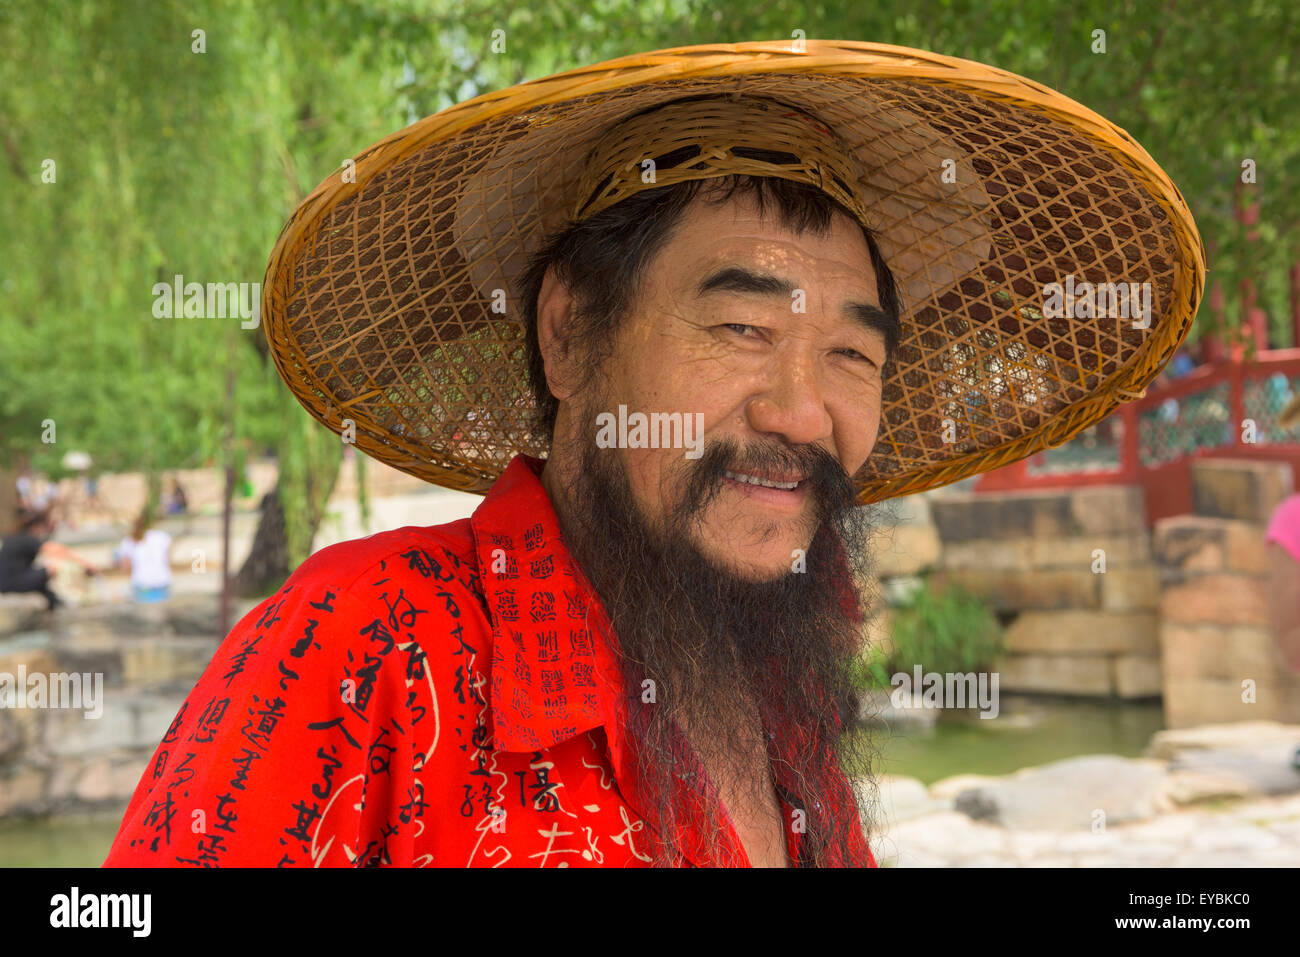 Chinese man wearing coolie-hat, barbe et chemise rouge par le Lac de Kunming à Beijing's Summer Palace - Juillet 2015 Banque D'Images